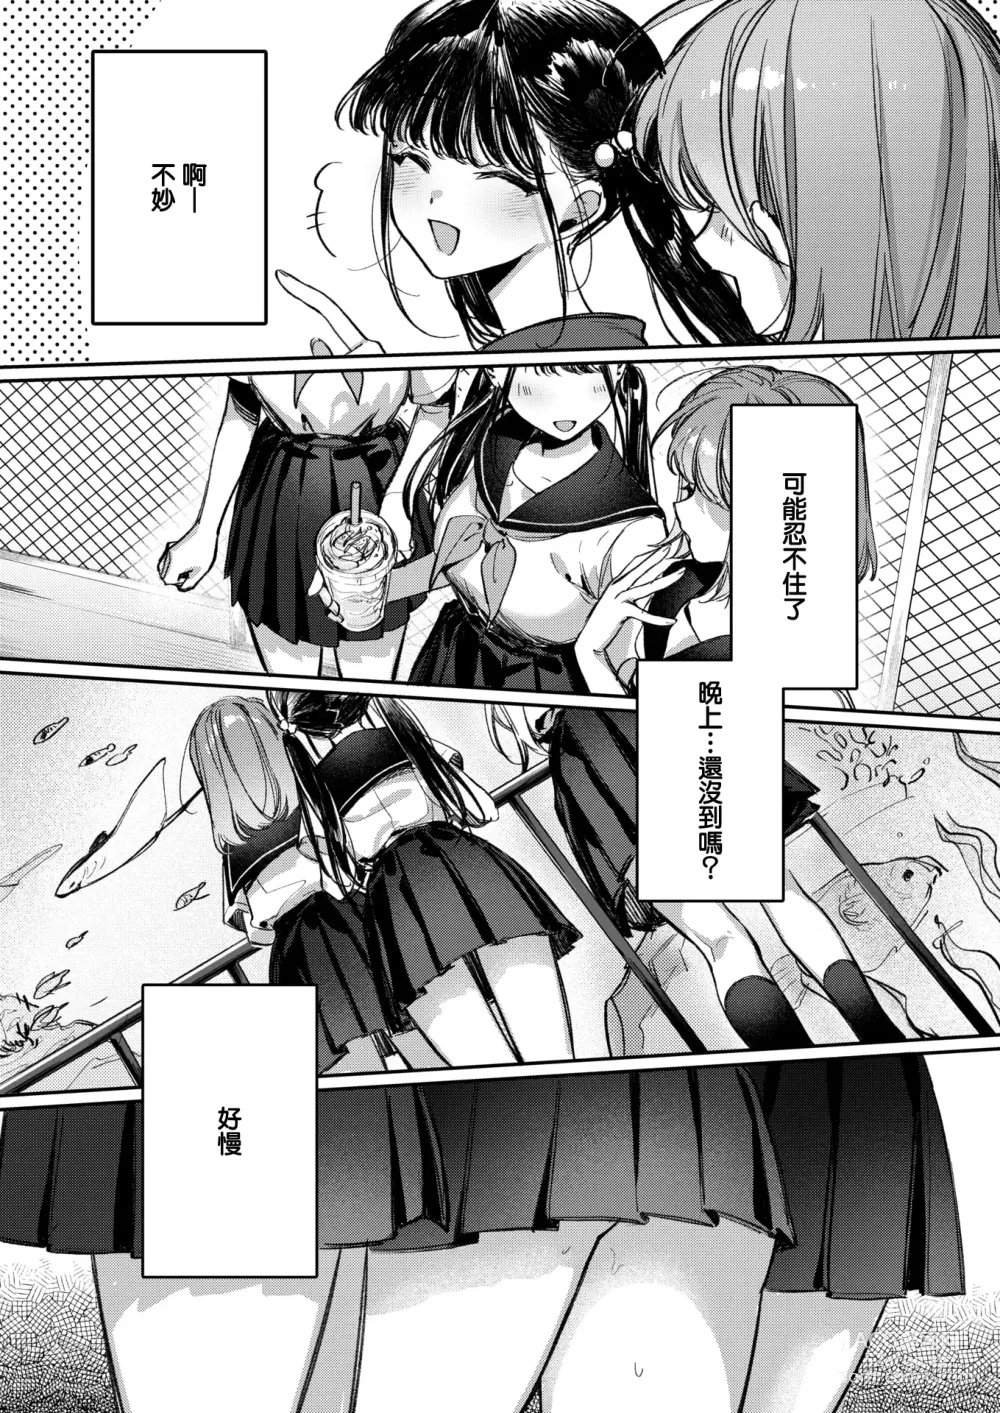 Page 4 of manga Doutei Reaper Sotsugyou Ryokou